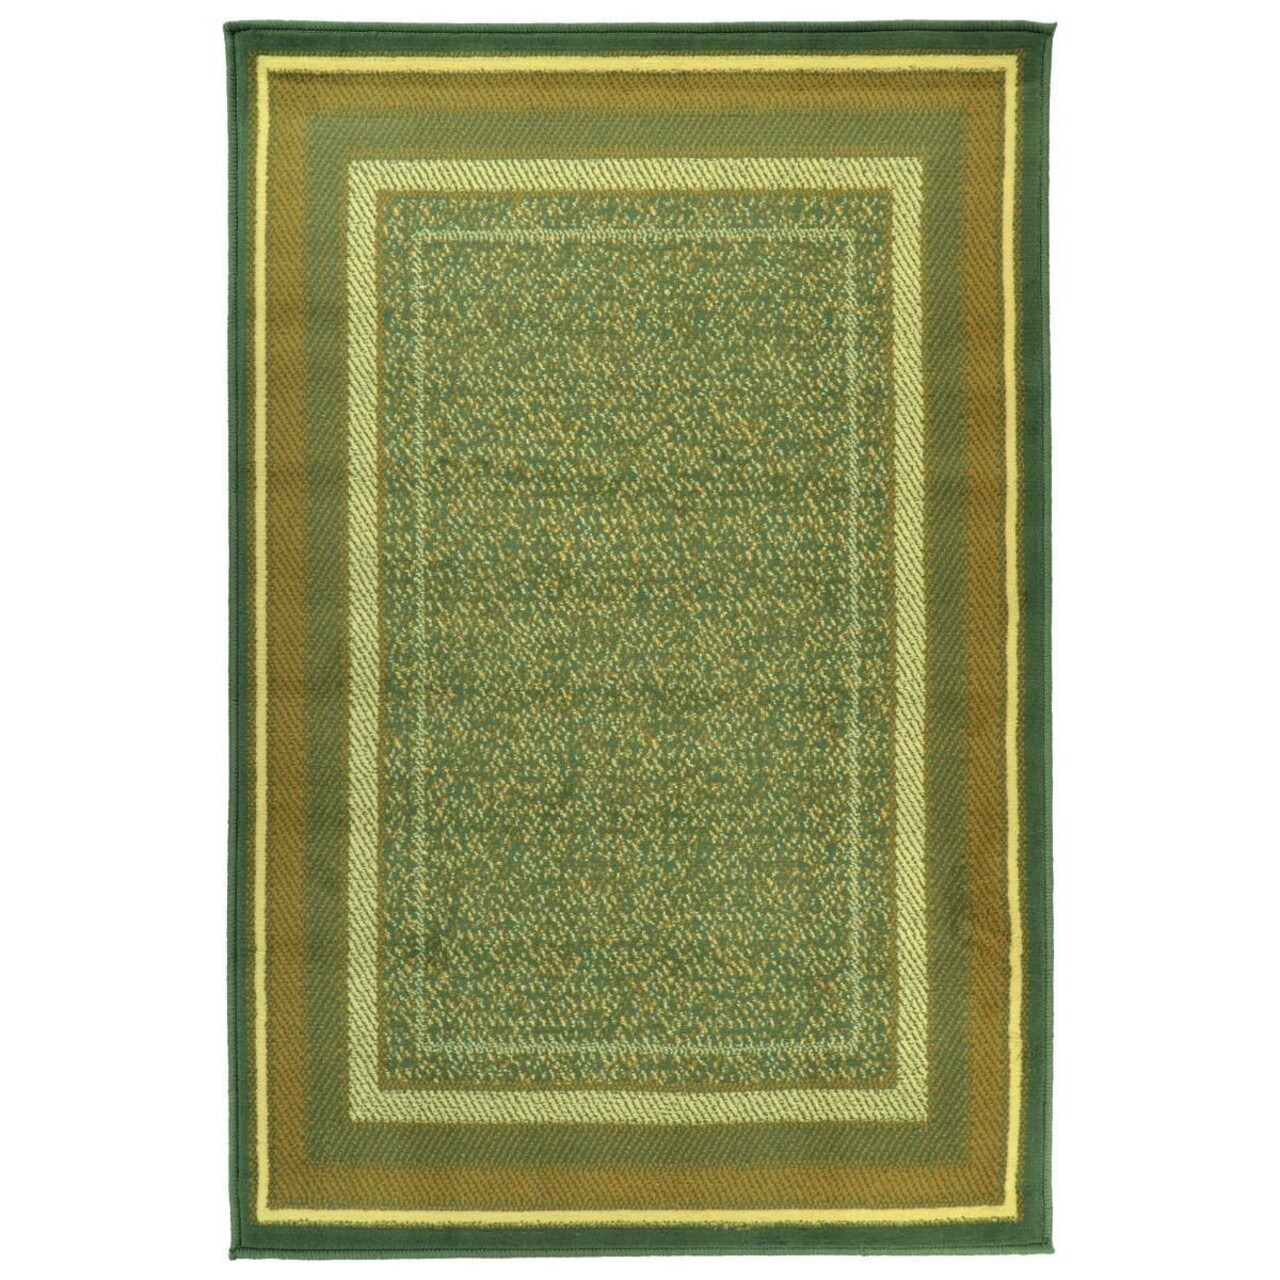 Home szőnyeg, Decorino, 100x150 cm, polipropilén, többszínű